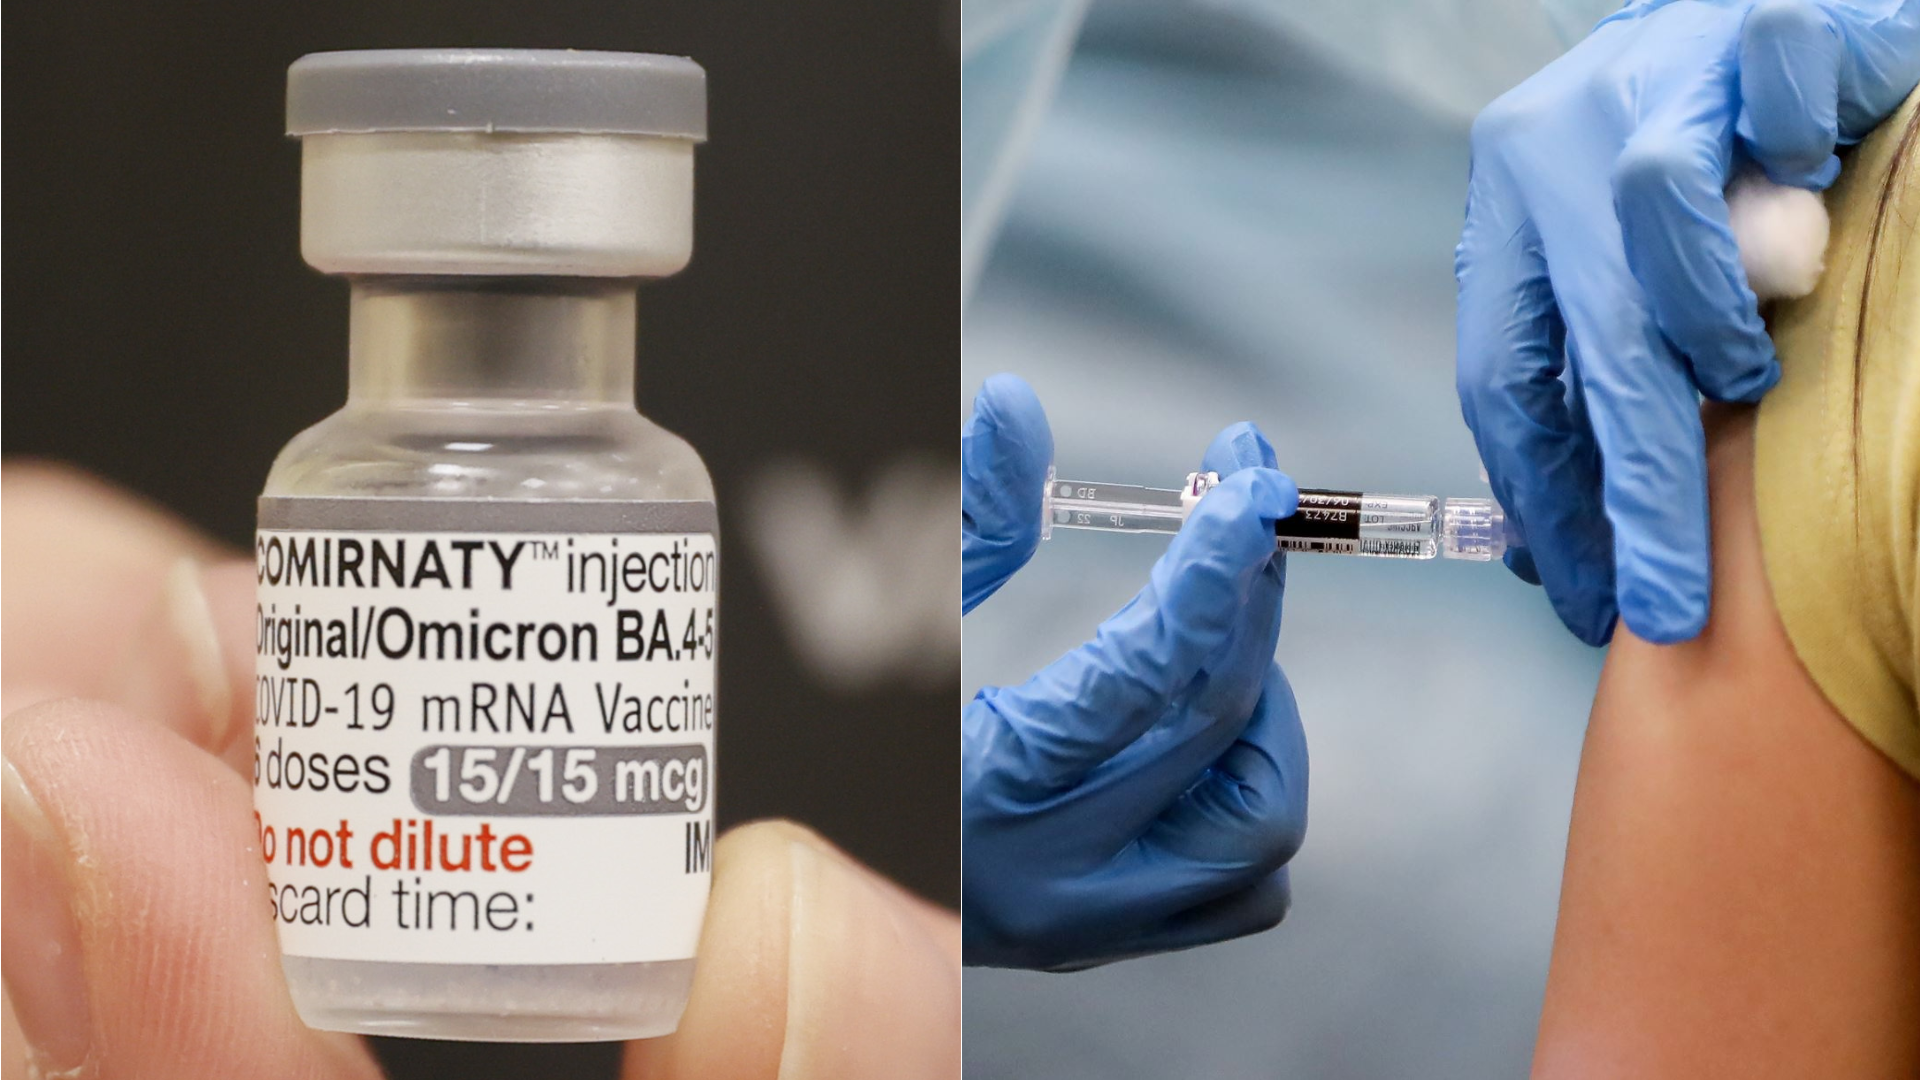 Le vaccin bivalent a un enregistrement sanitaire accordé par Digemid